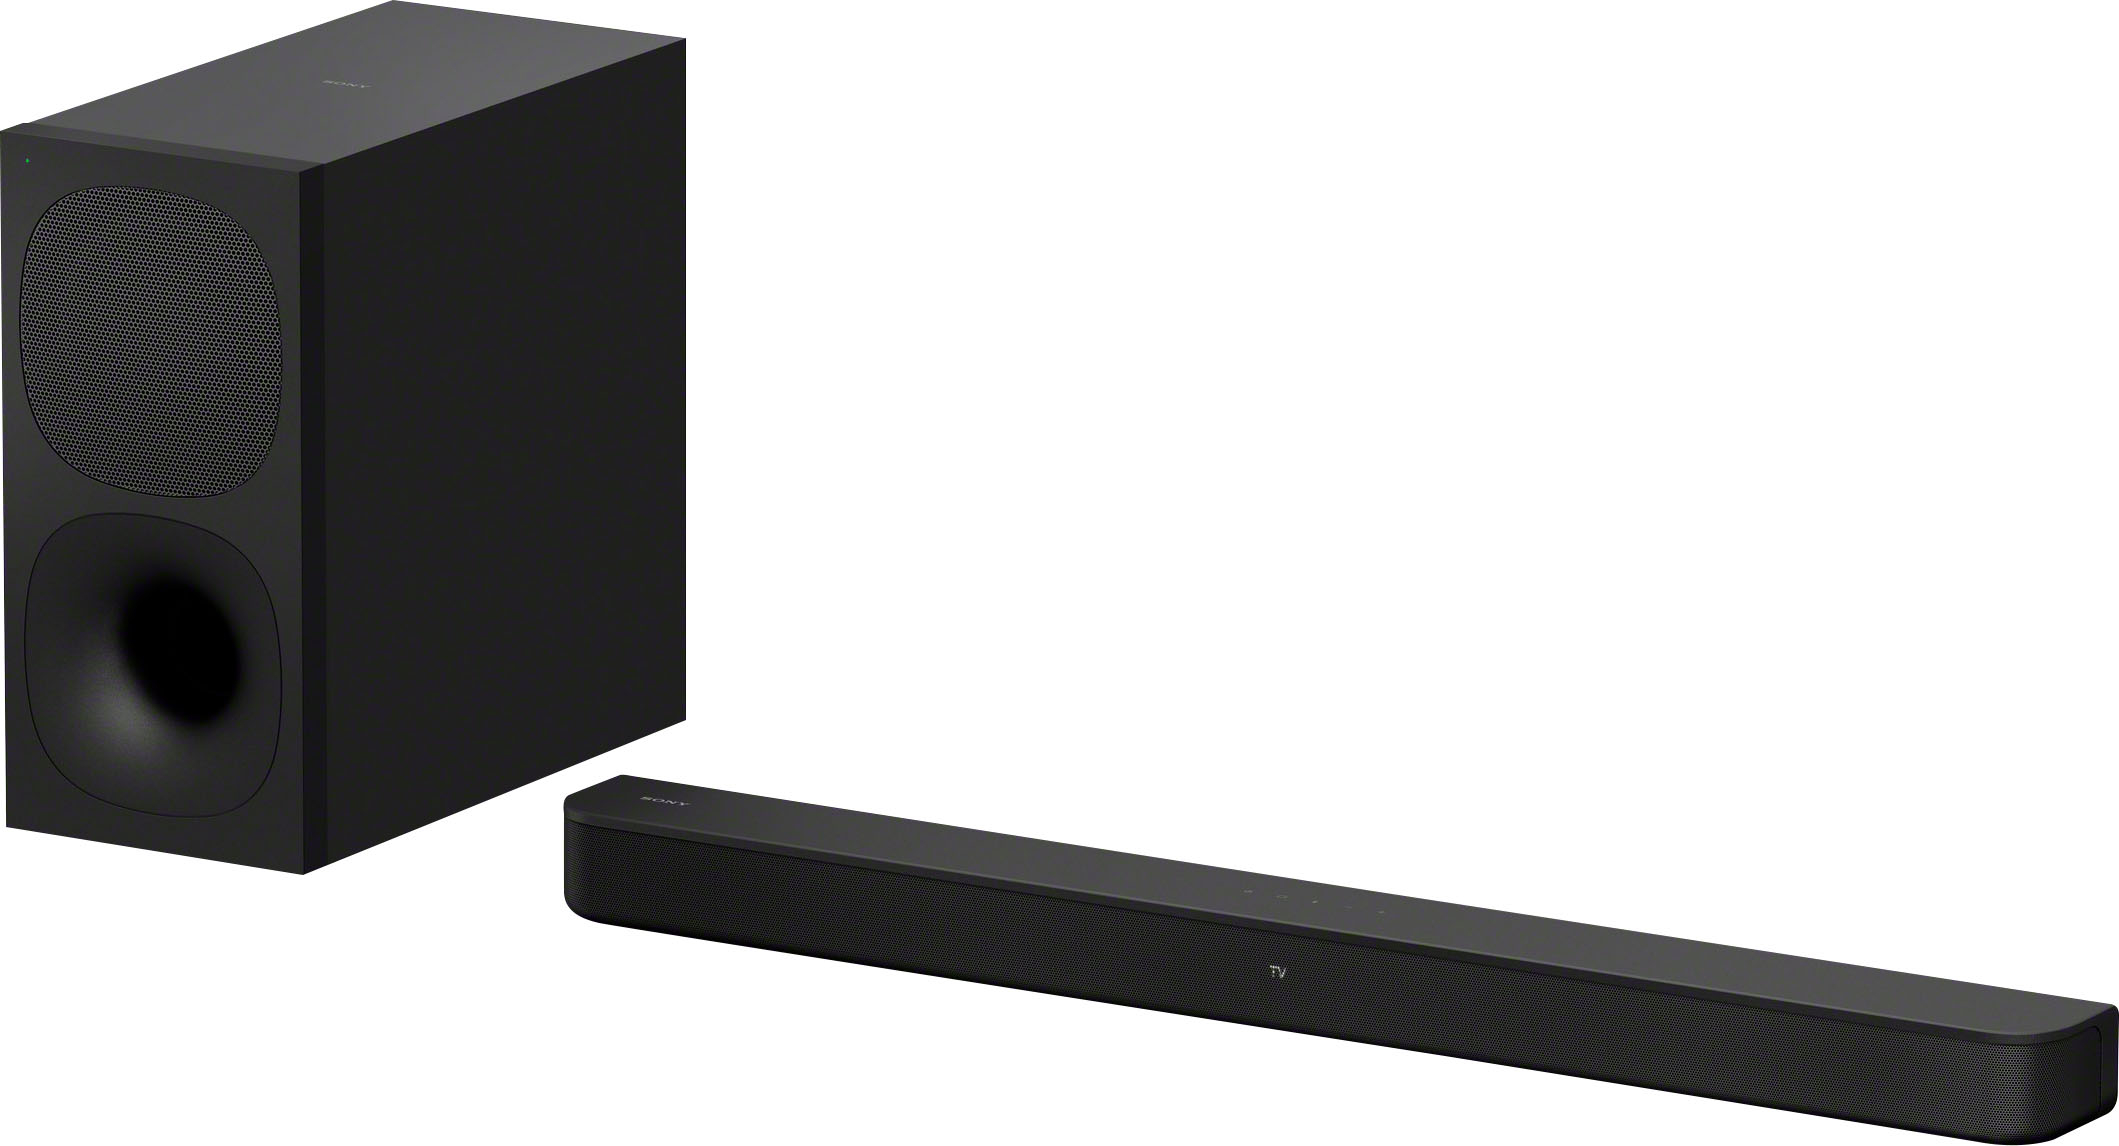 Sony HT-S400 2.1ch Soundbar powerful wireless Subwoofer Black - Best Buy